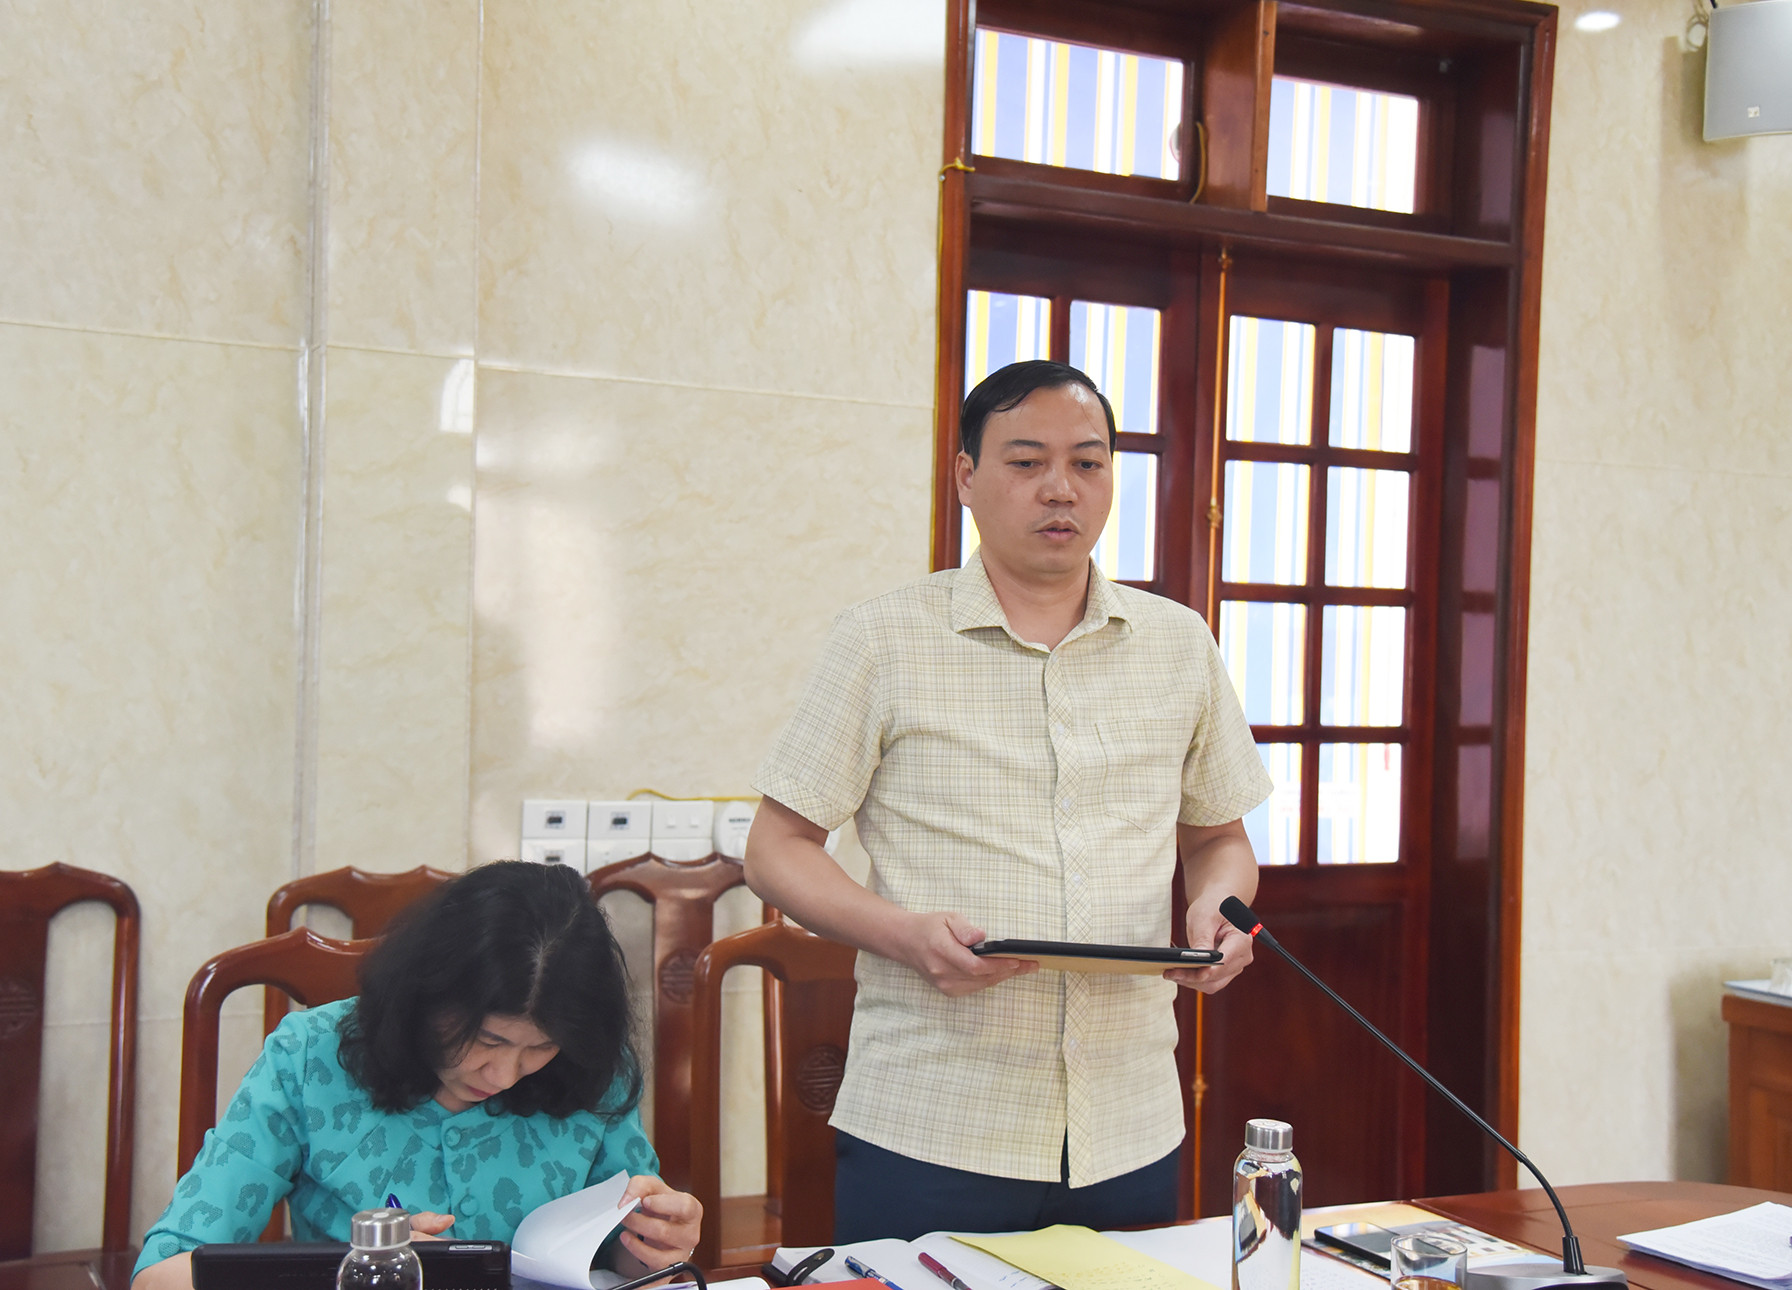 Đồng chí Chu Đức Thái - Trưởng Ban Văn hóa - Xã hội HĐND tỉnh bày tỏ băn khoăn về chất lượng đào tạo, những khó khăn tại các cơ sở giáo dục nghề nghiệp. Ảnh: Thanh Lê